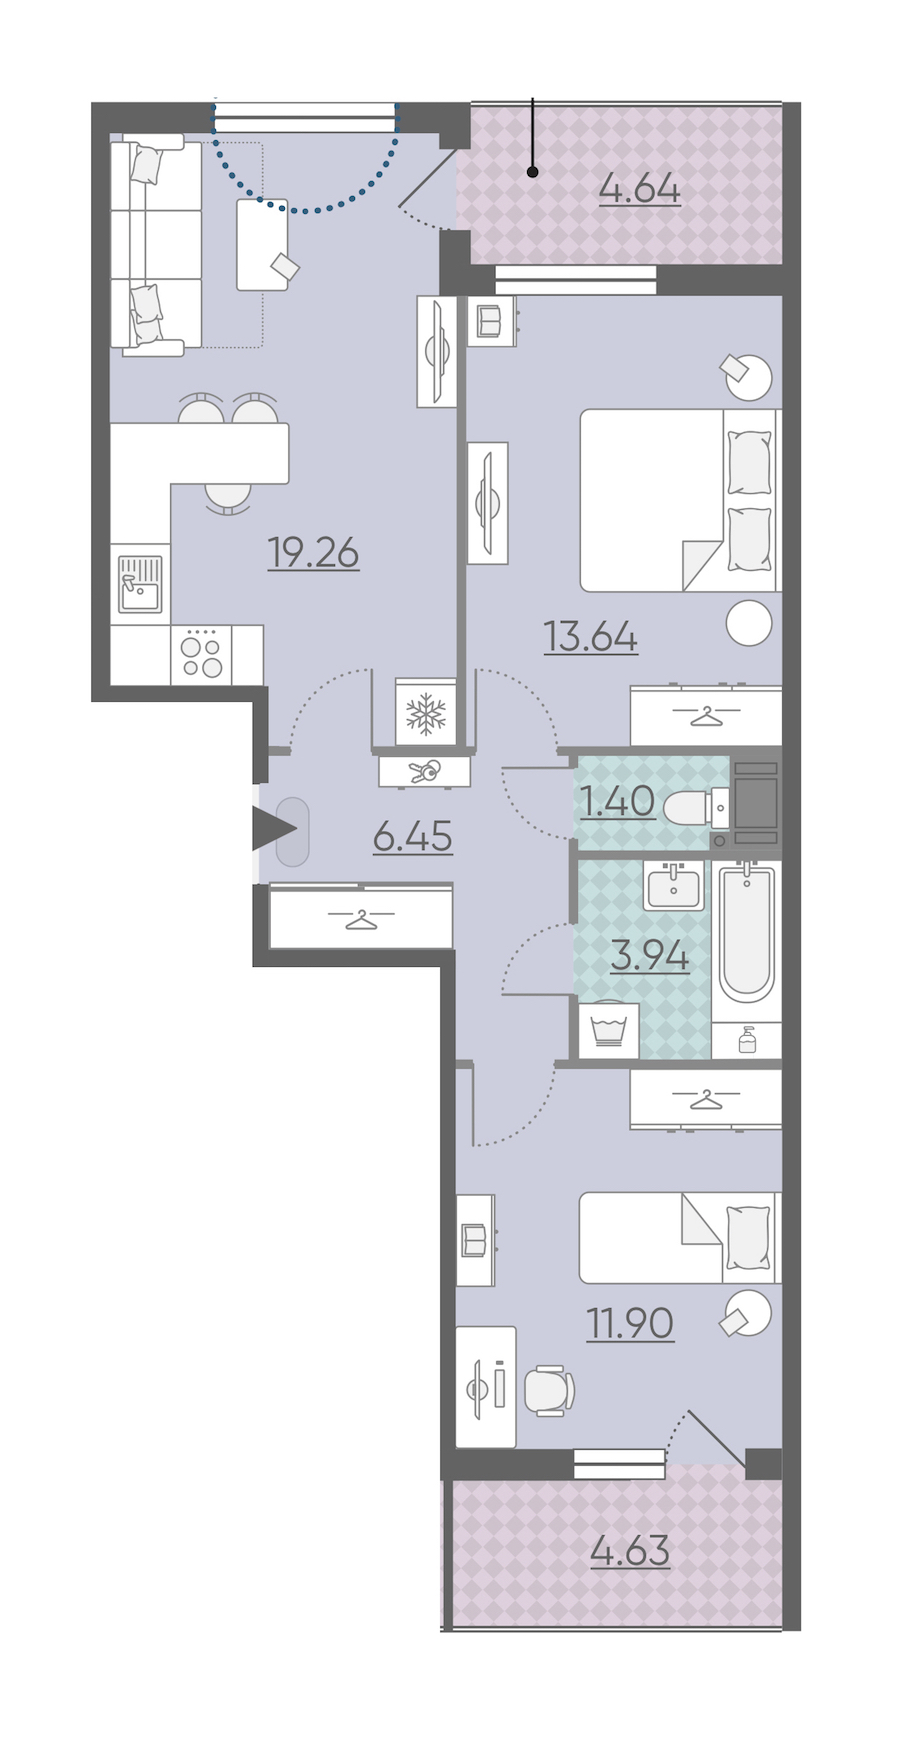 Двухкомнатная квартира в : площадь 61.23 м2 , этаж: 3 – купить в Санкт-Петербурге